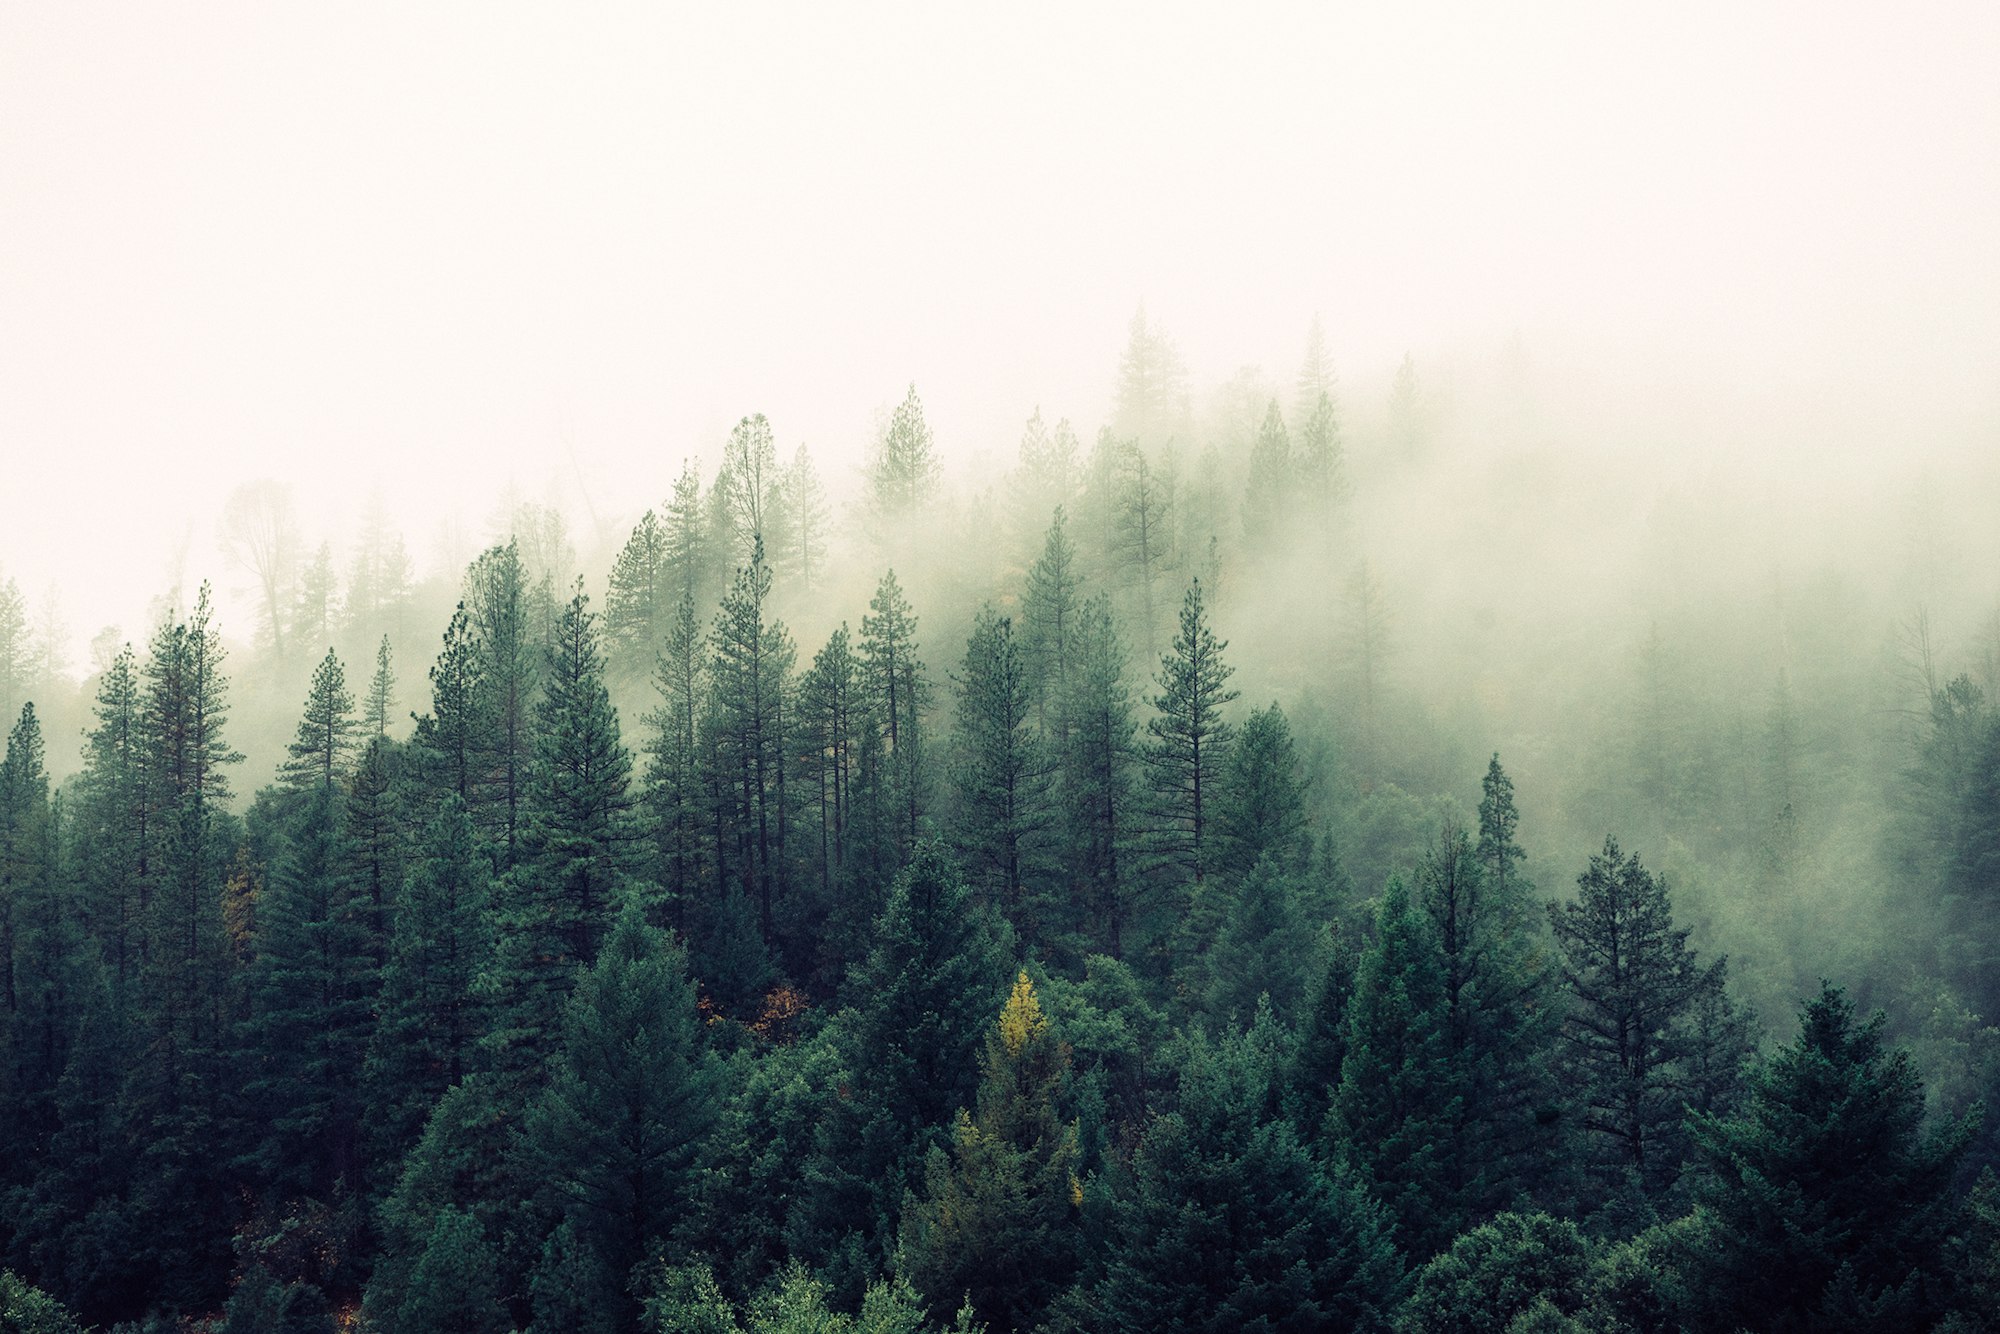 Misty shroud over a forest